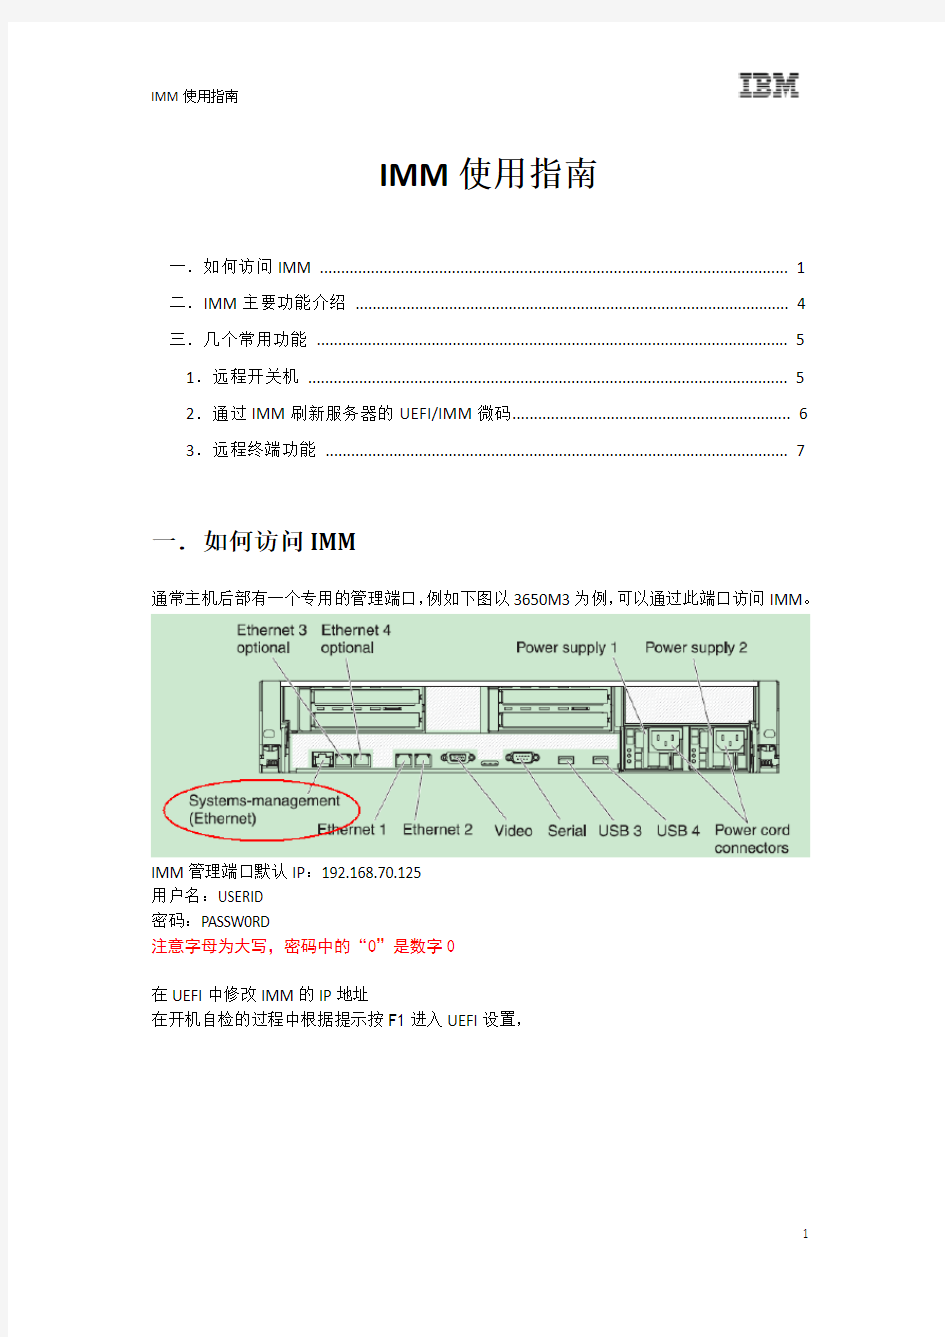 IBM IMM用户手册-远程管理卡